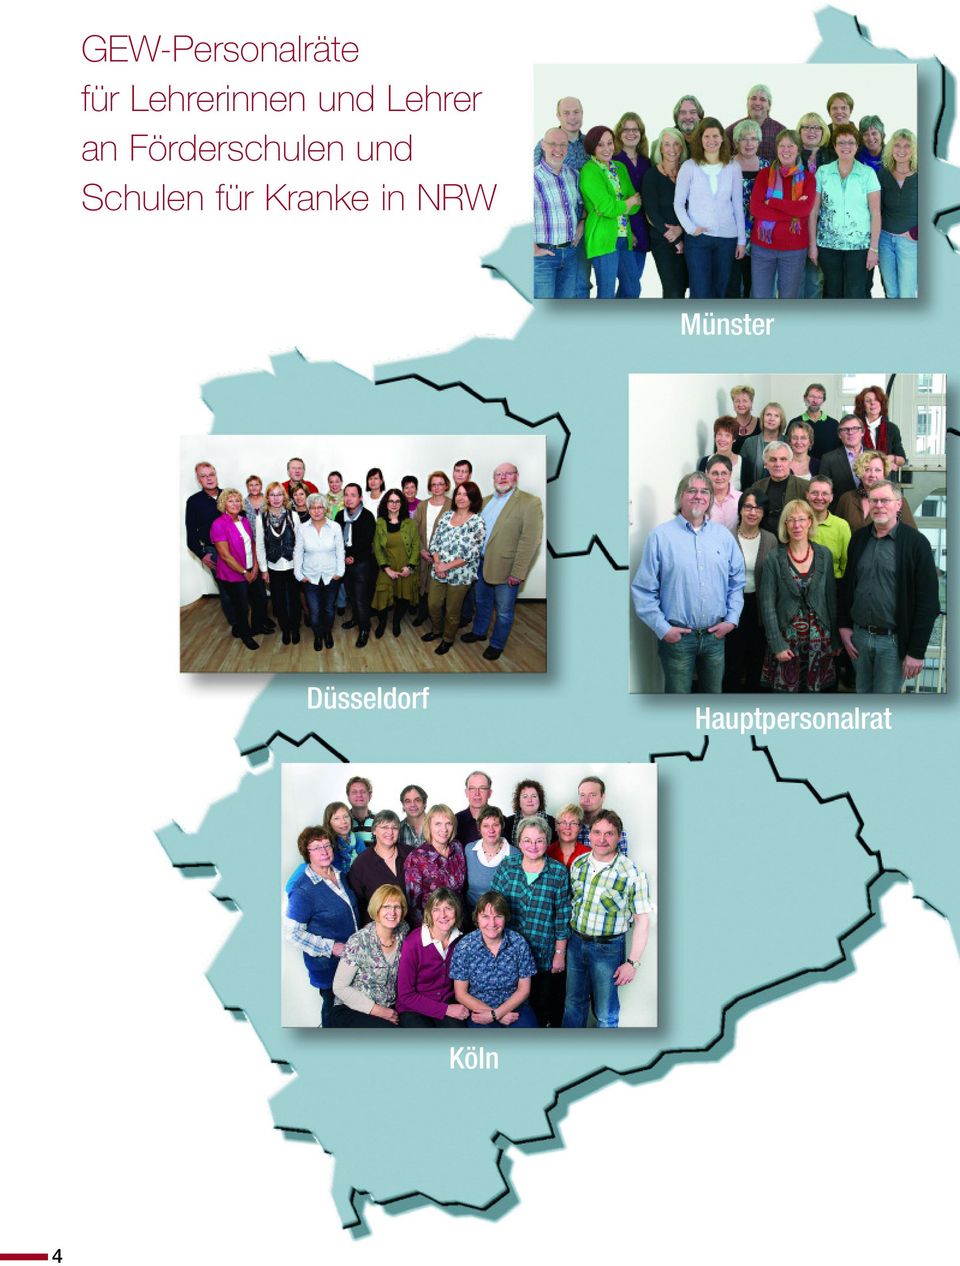 Schulen für Kranke in NRW Münster